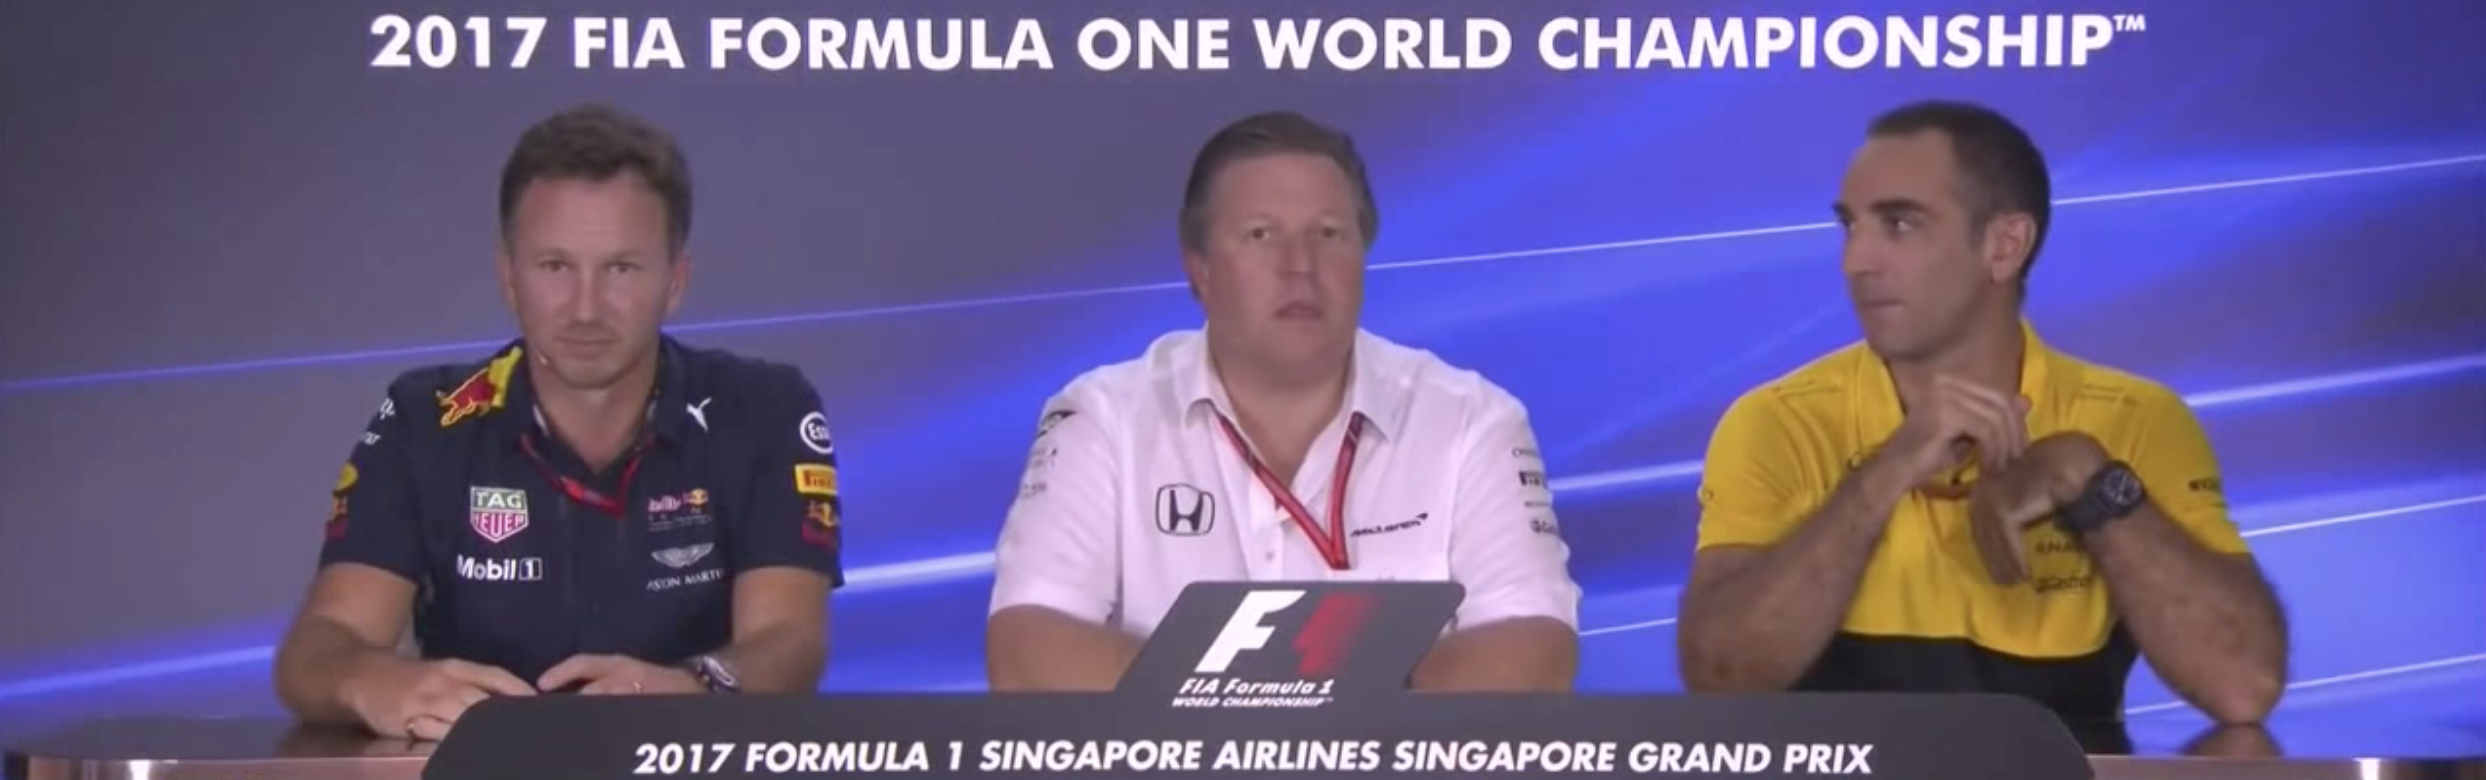 RedBull, McLaren, Renault i fredagens presskonferens